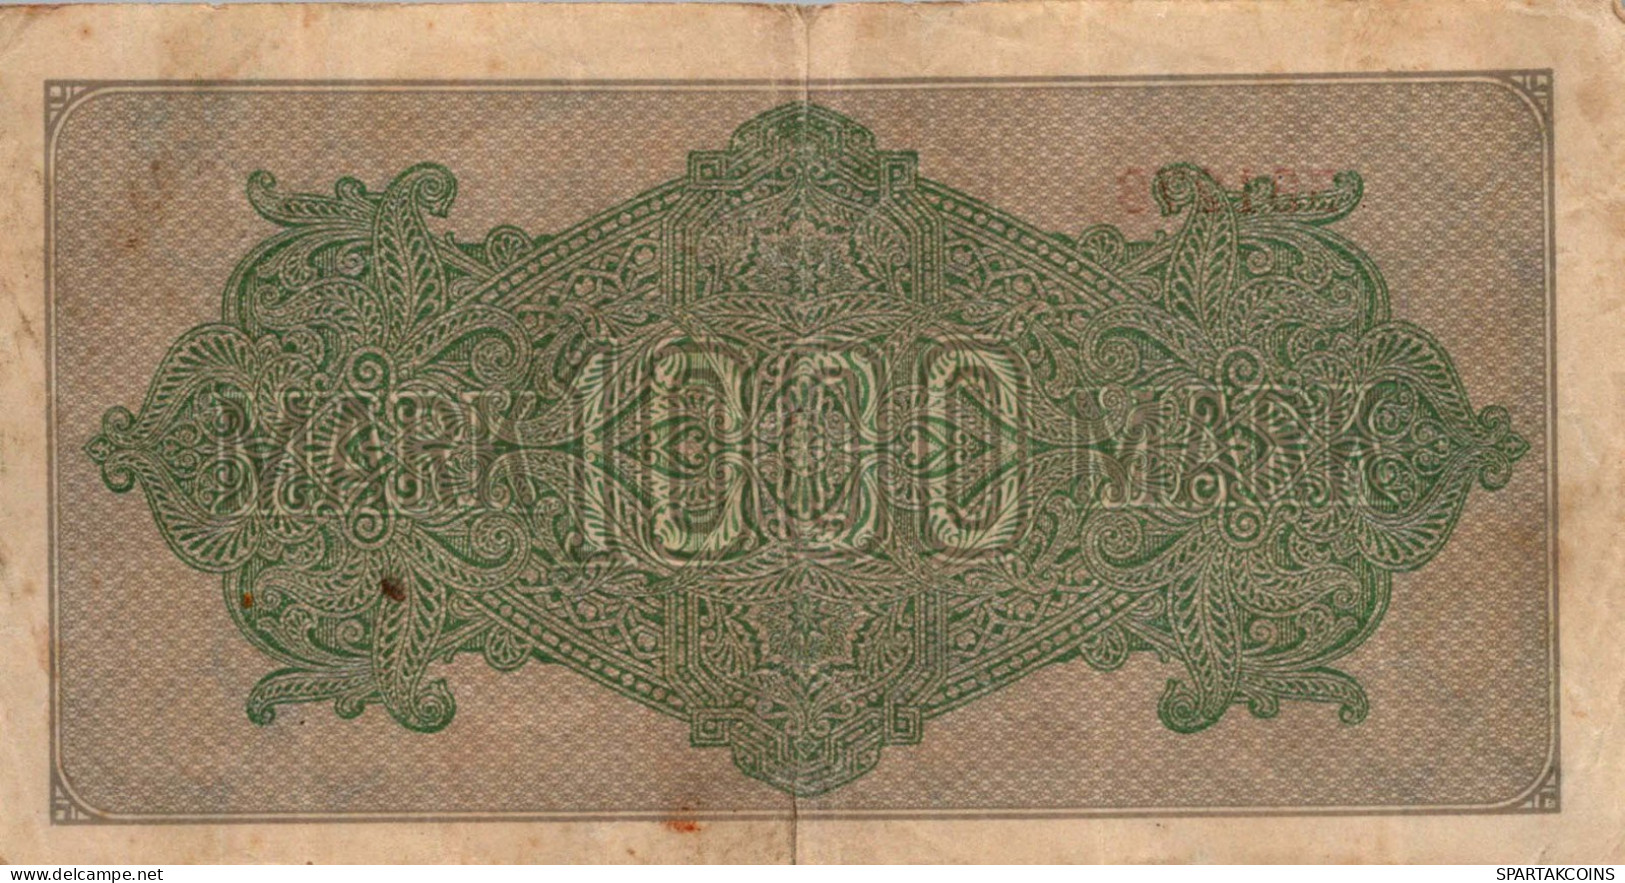 1000 MARK 1922 Stadt BERLIN DEUTSCHLAND Papiergeld Banknote #PL030 - [11] Emisiones Locales